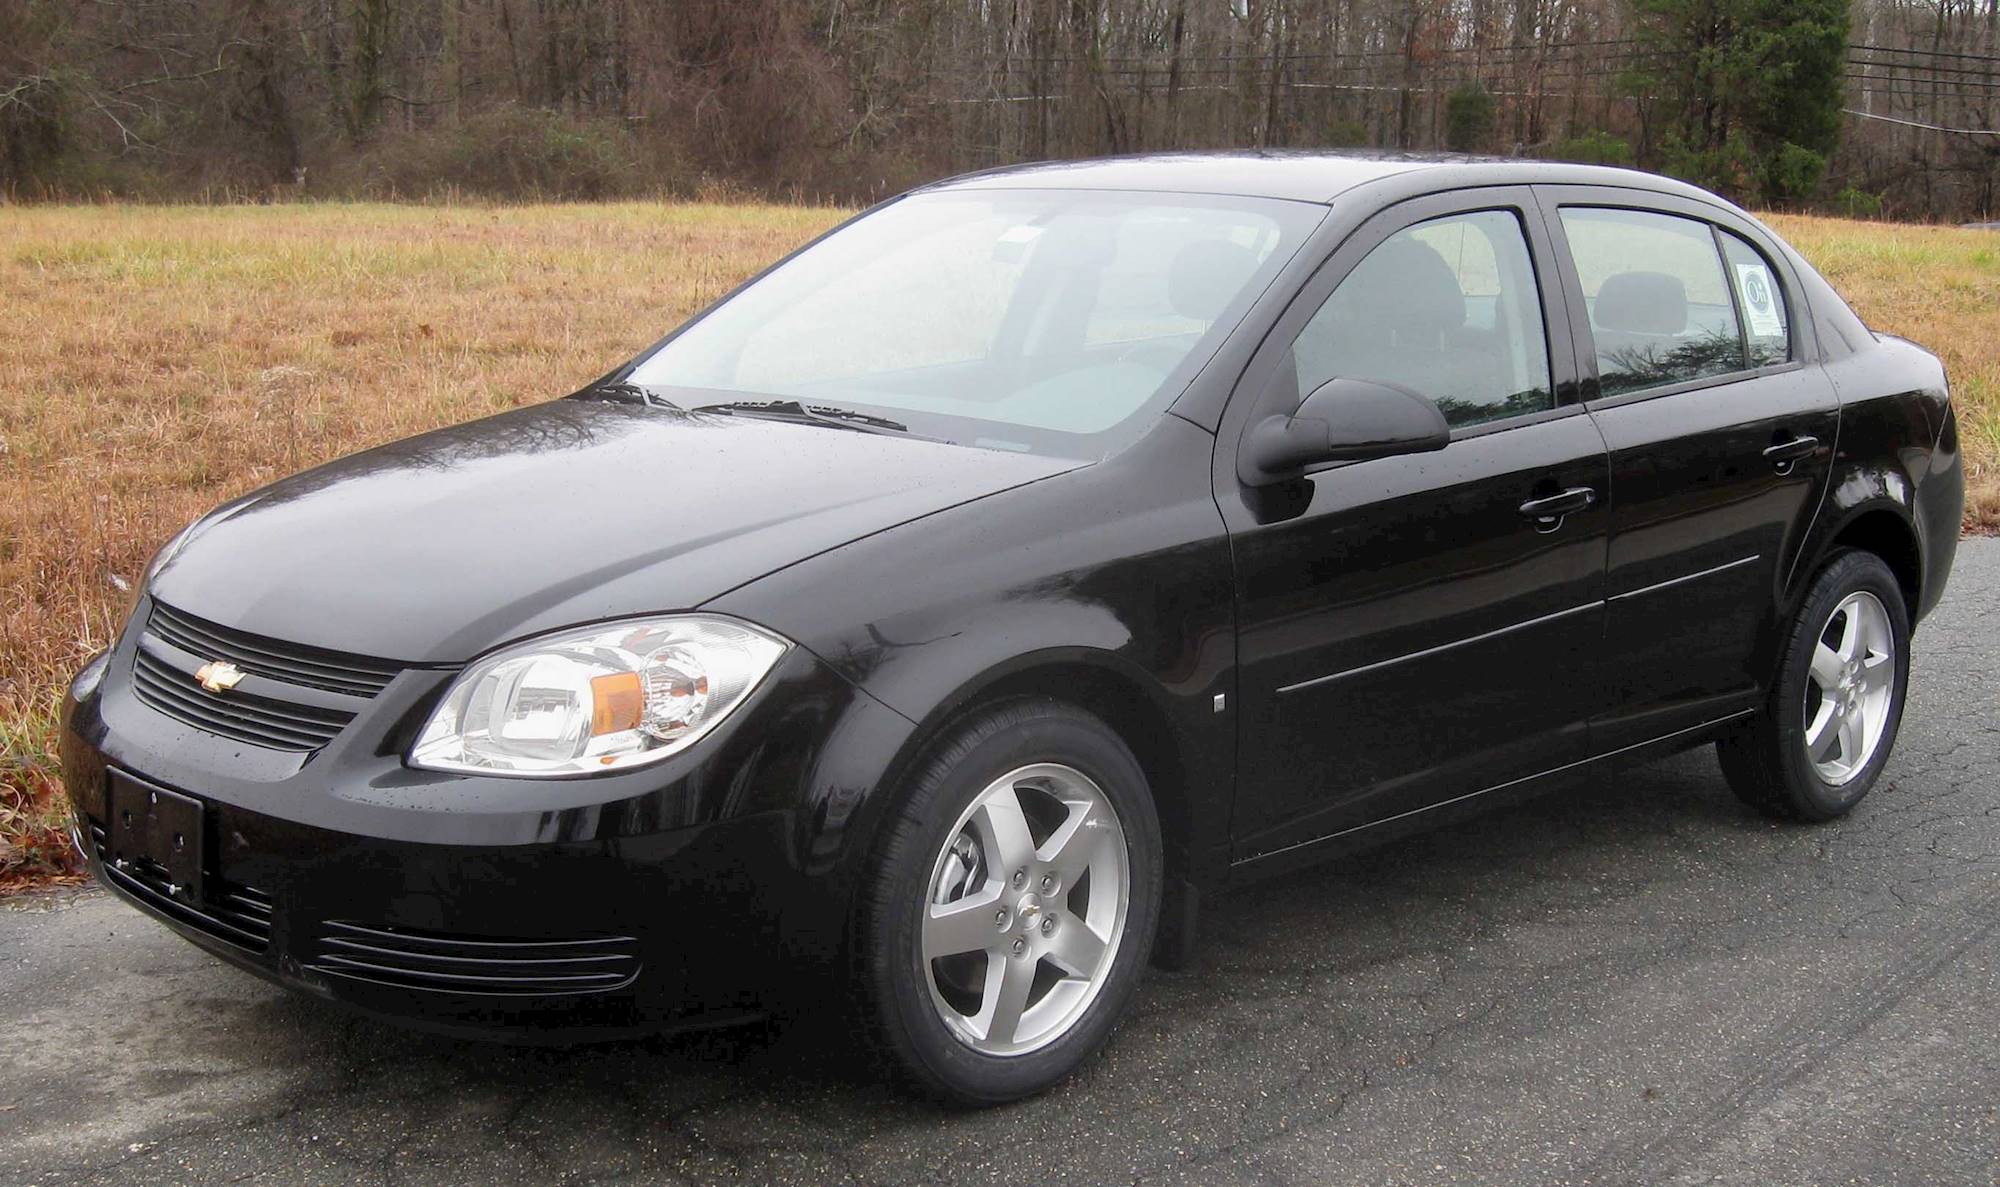 2008 Chevrolet Cobalt Tire Size P195/65r15 (ls · Lt)